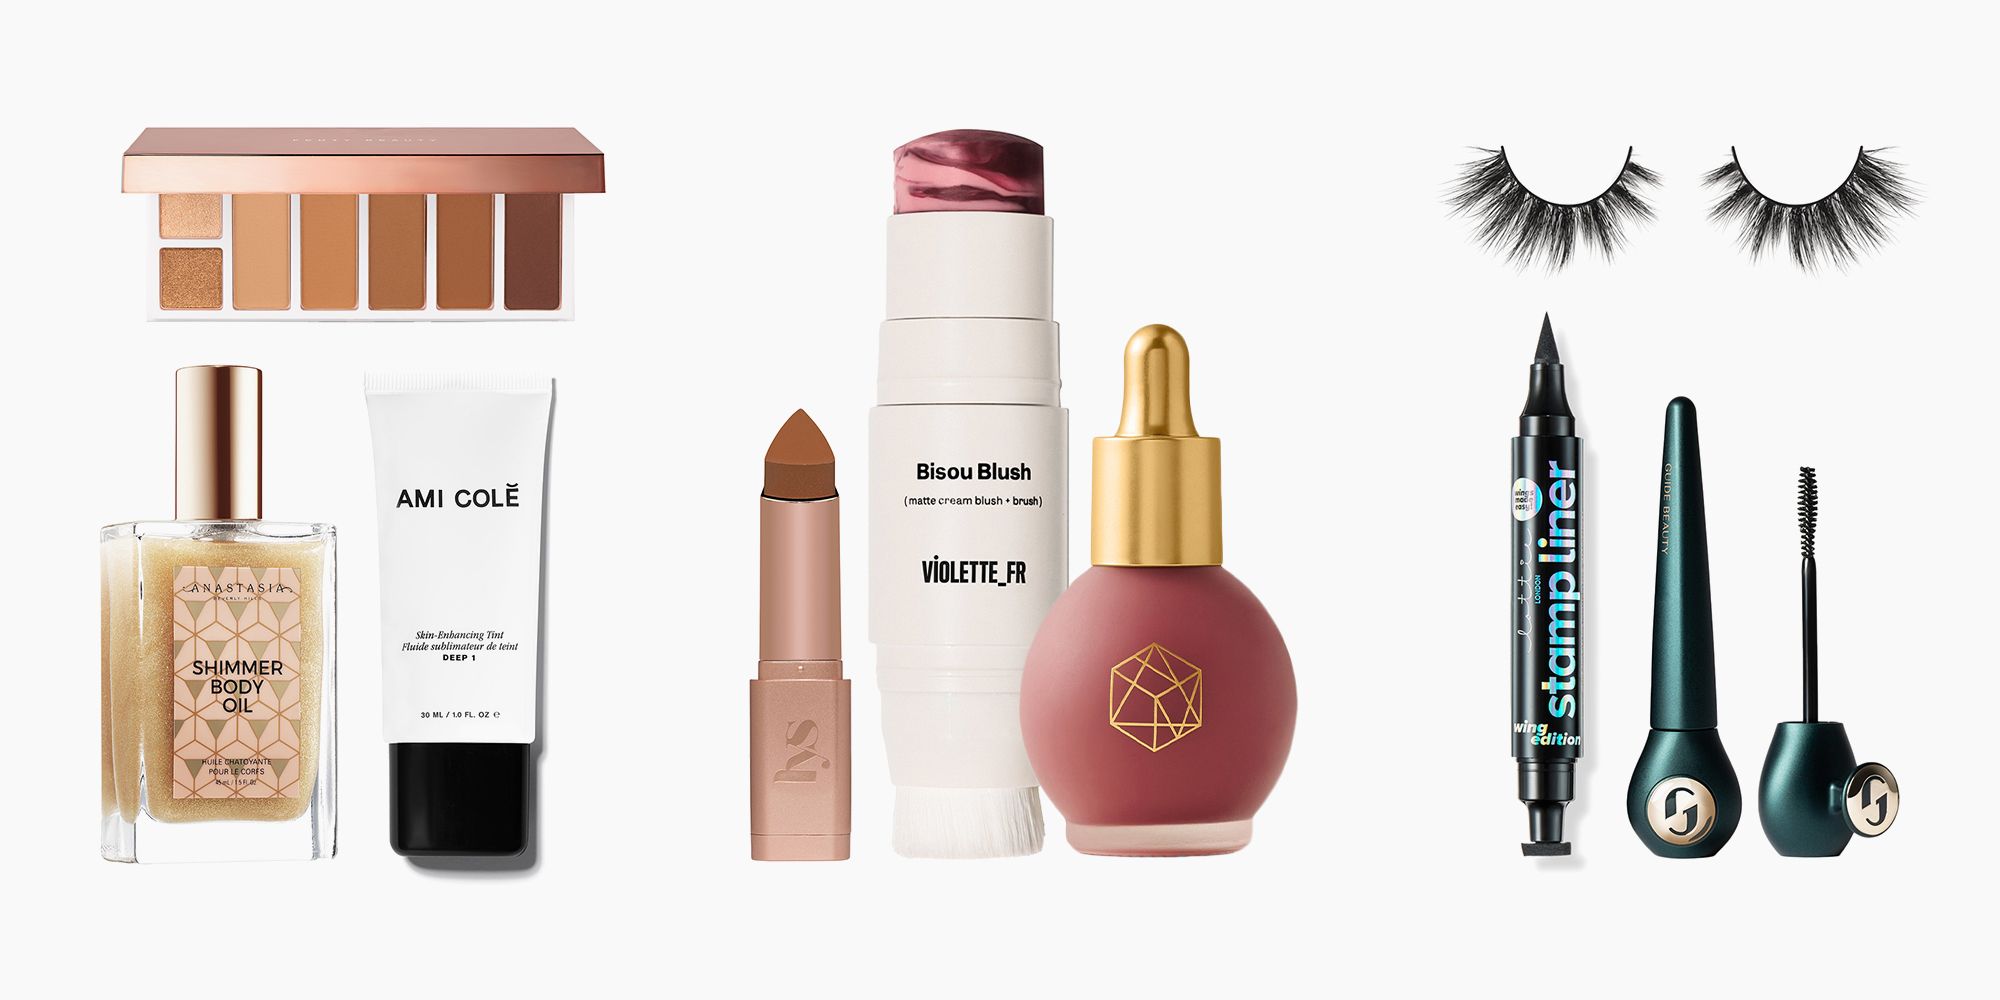 TOP 10 MAKEUP BRANDS IN THE WORLD  Makeup brands, Makeup, Makeup vanity